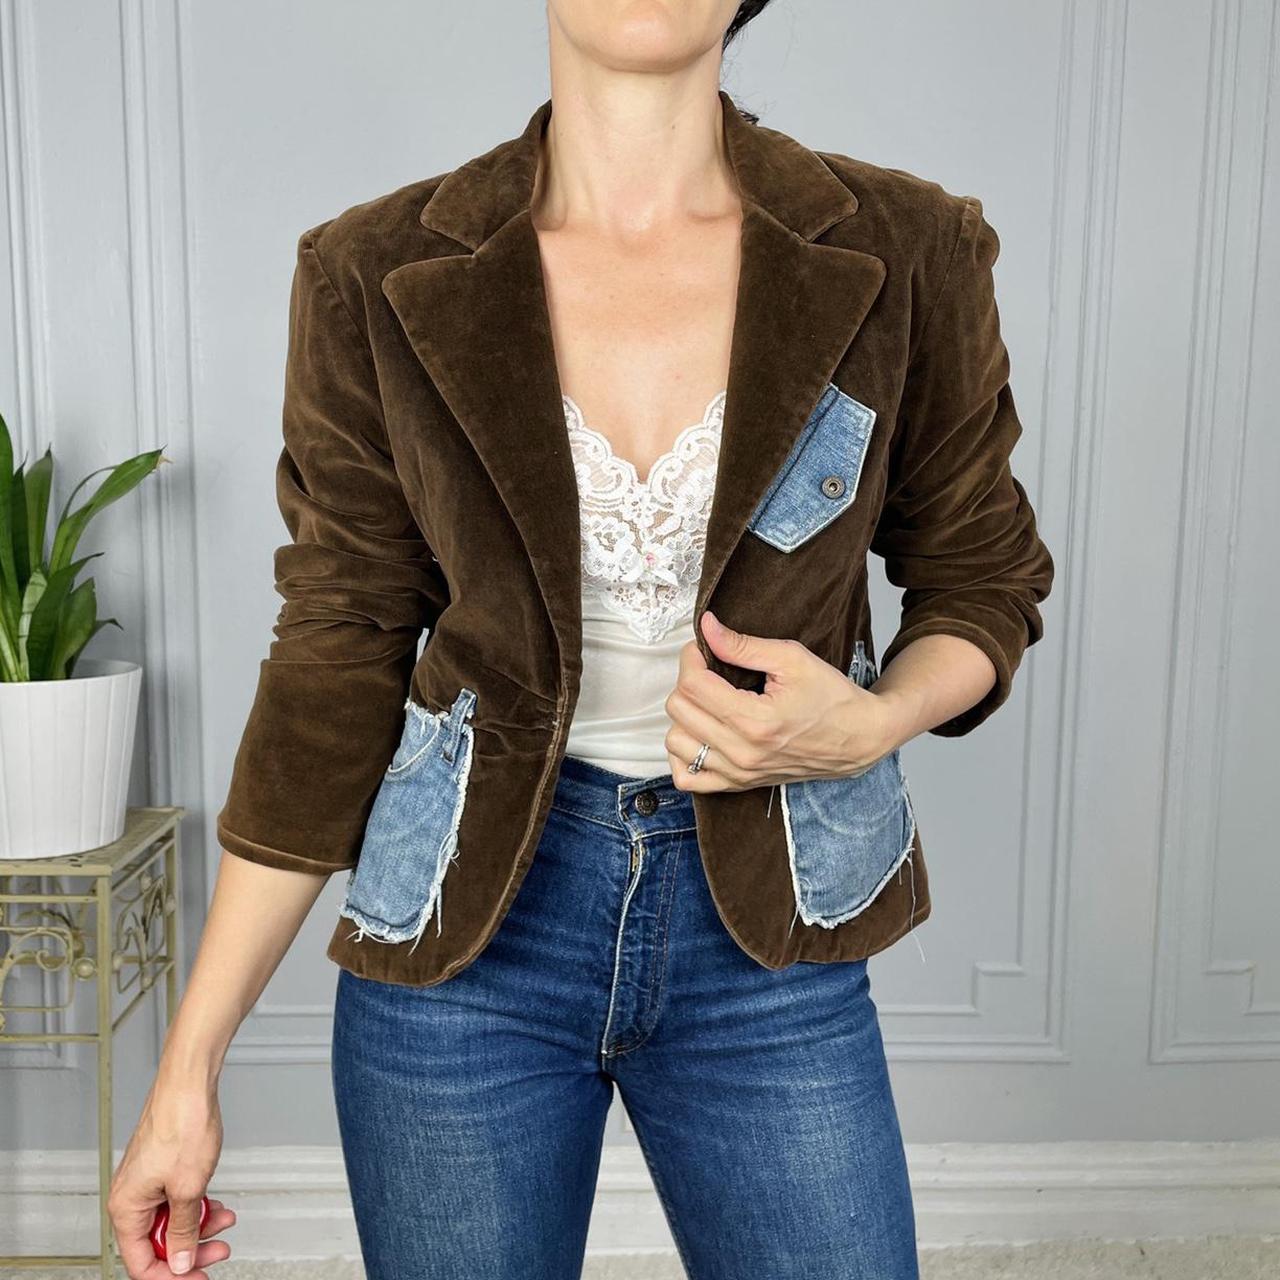 Product Image 1 - Y2K Brown Blazer Jacket

Cute vintage